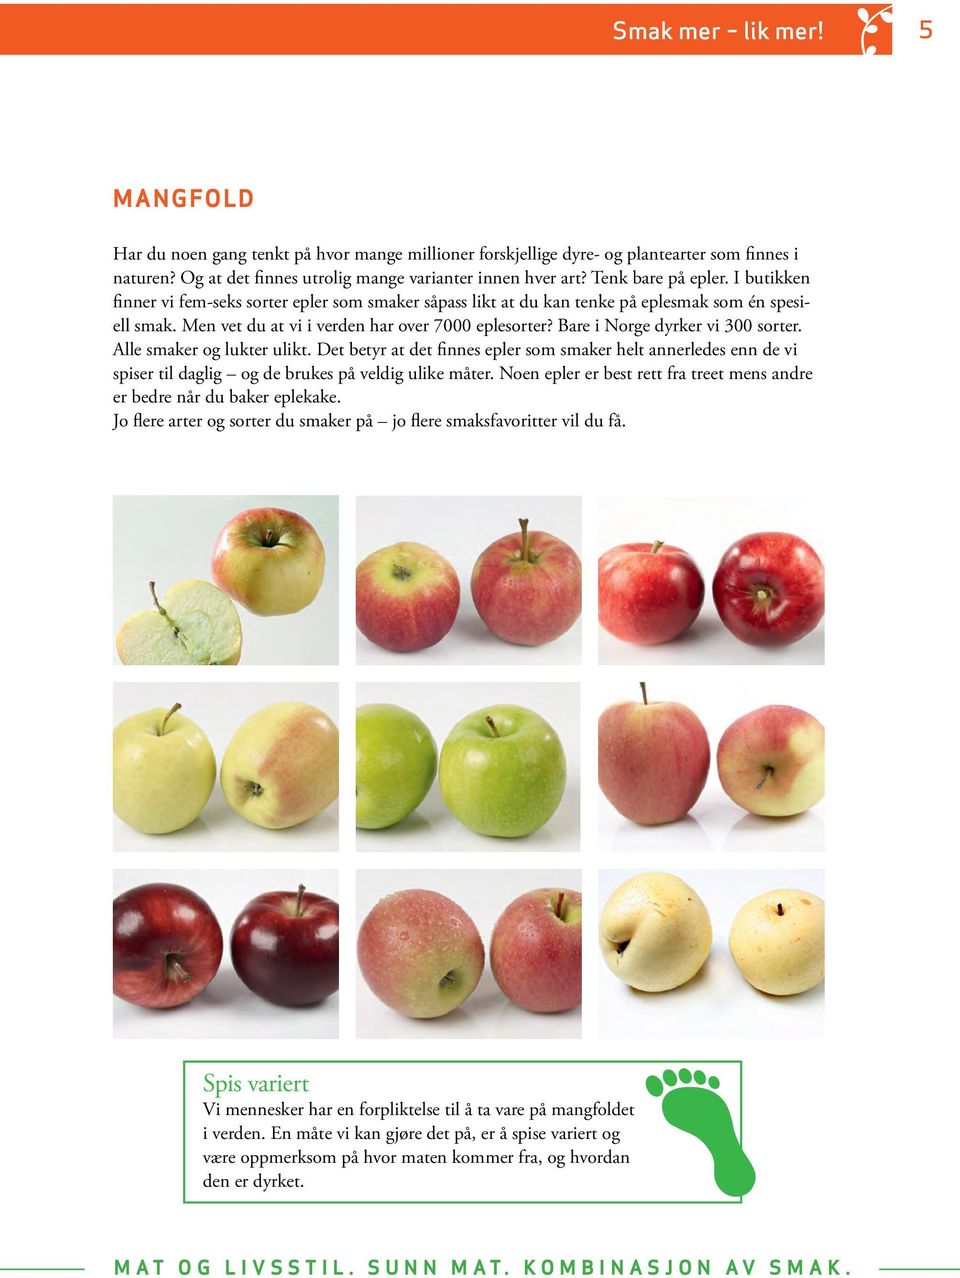 Bare i Norge dyrker vi 300 sorter. Alle smaker og lukter ulikt. Det betyr at det finnes epler som smaker helt annerledes enn de vi spiser til daglig og de brukes på veldig ulike måter.